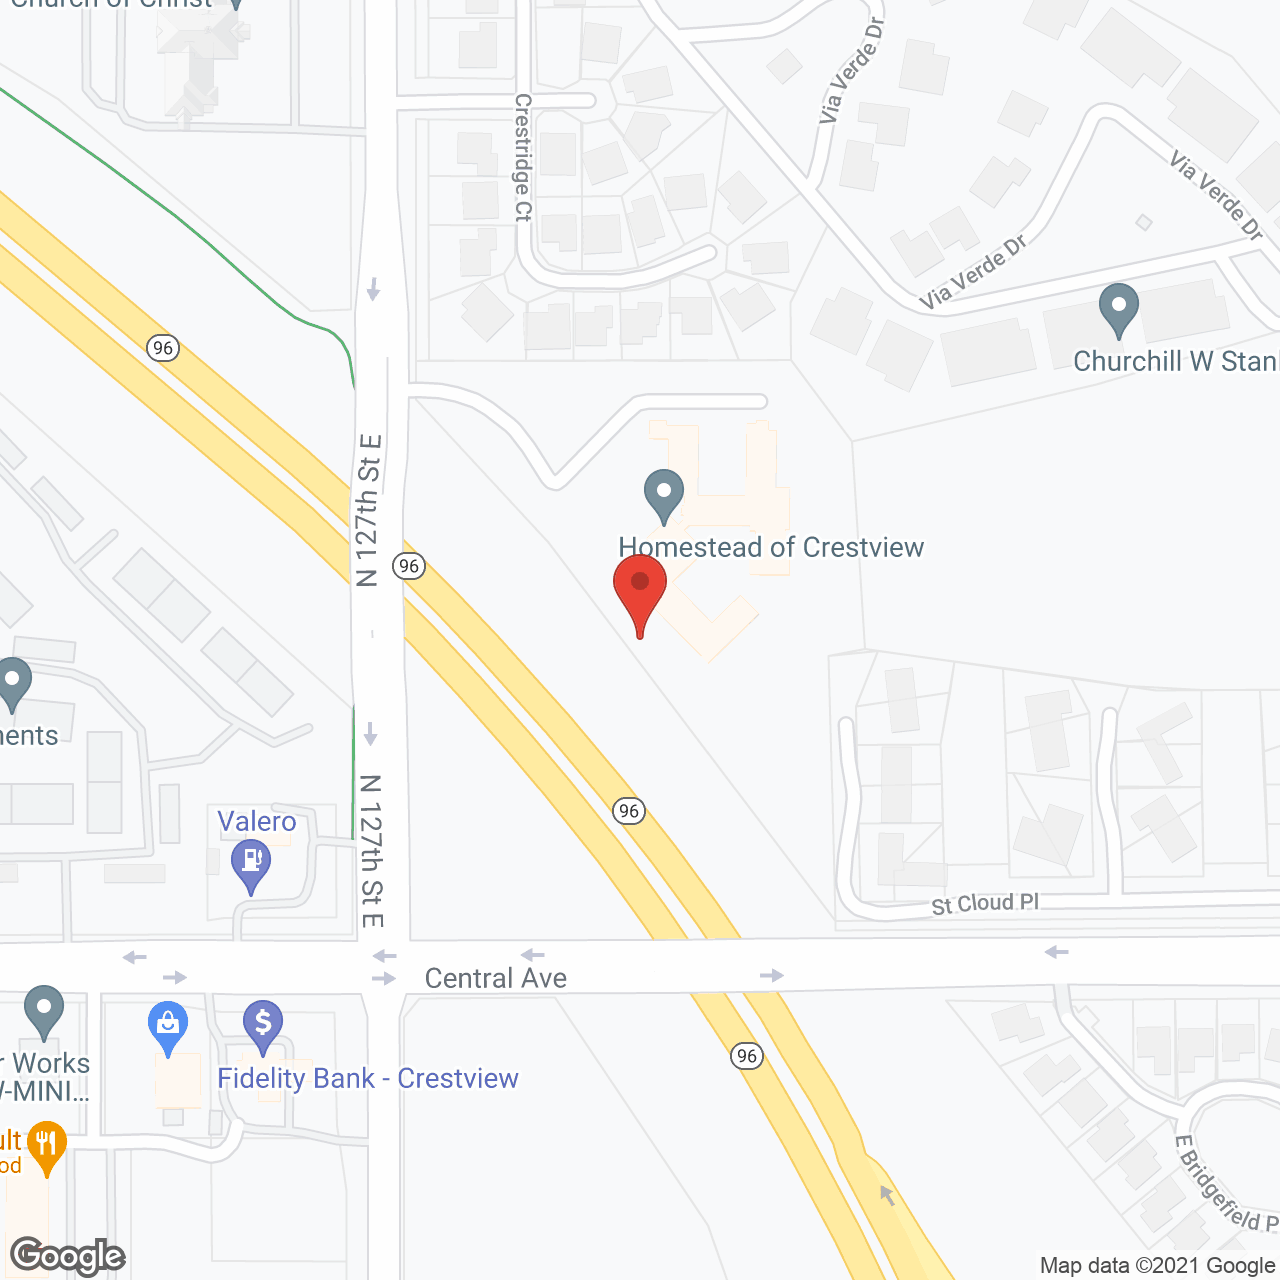 Homestead of Crestview in google map